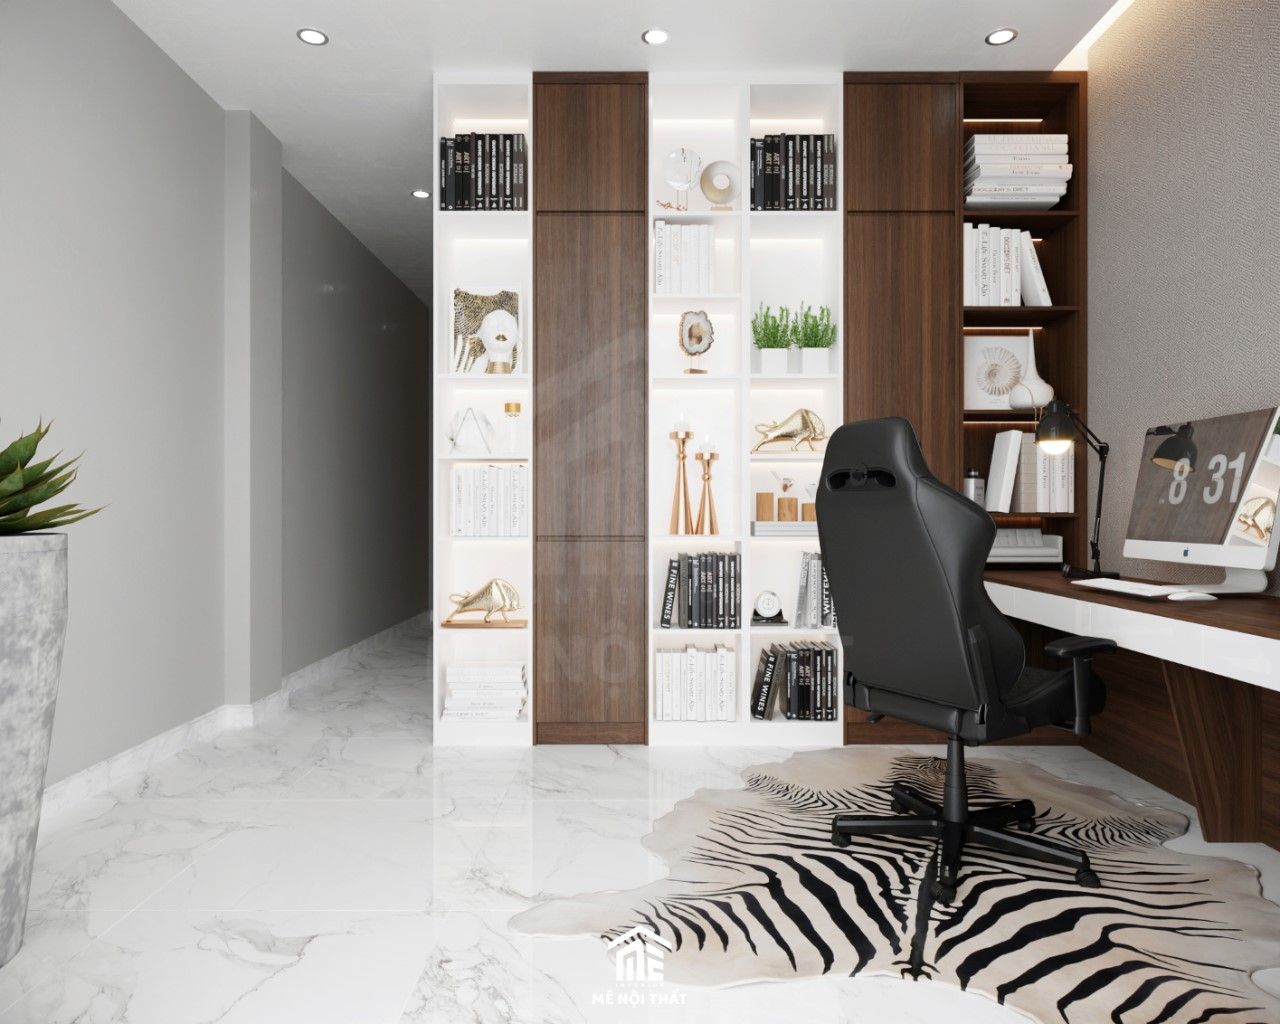 Phòng làm việc thiết kế riêng tư, sang trọng với tủ kết hợp kệ sách phối màu gỗ và màu trắng độc đáo